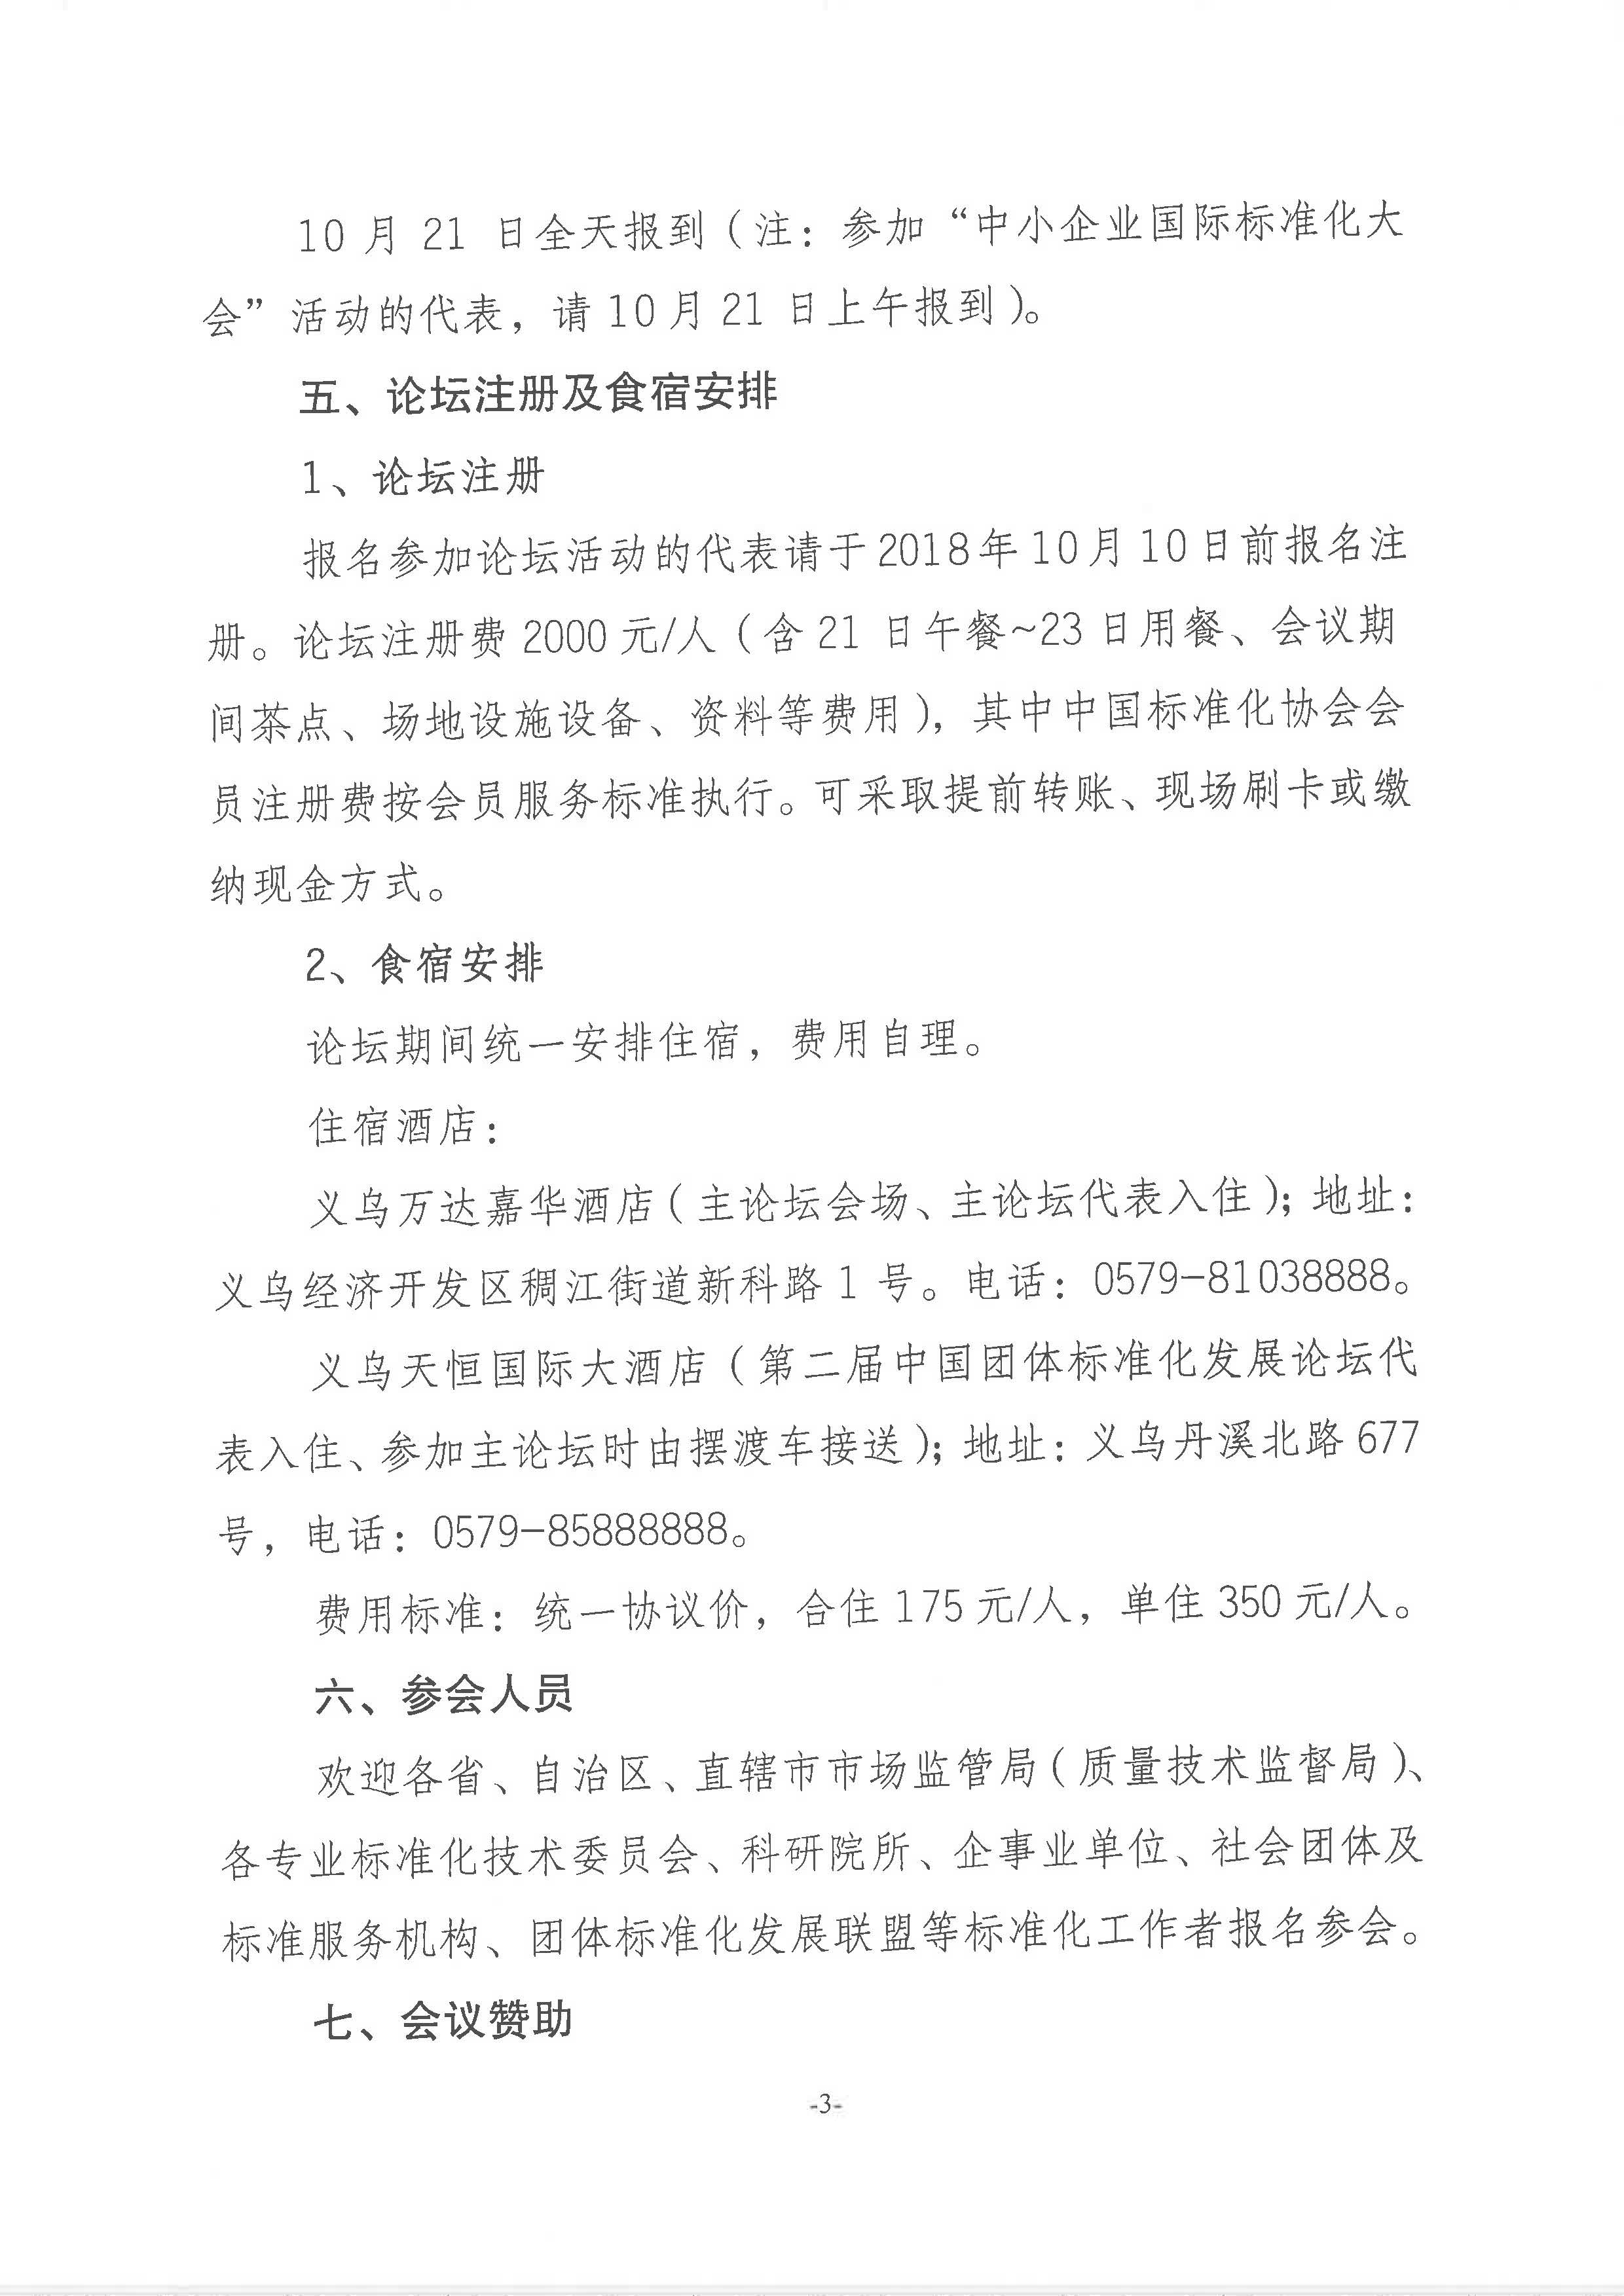 附件1：关于举办“第十五届中国标准化论坛”的通知2018-225_页面_3.jpg